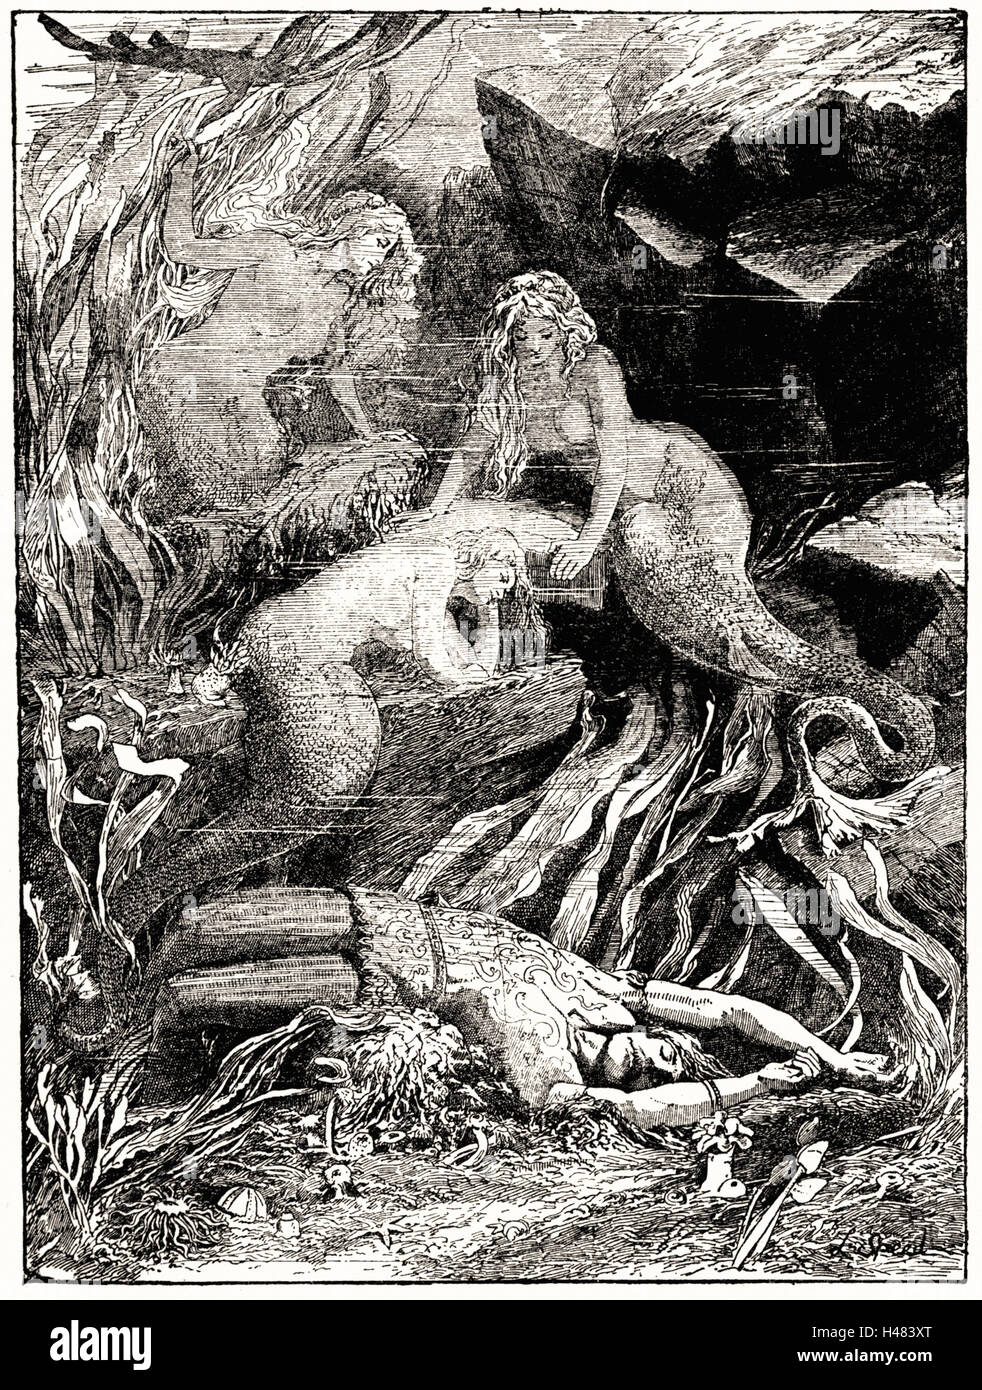 La ilustración en la página 27 del libro de hadas rojas (1890) Foto de stock